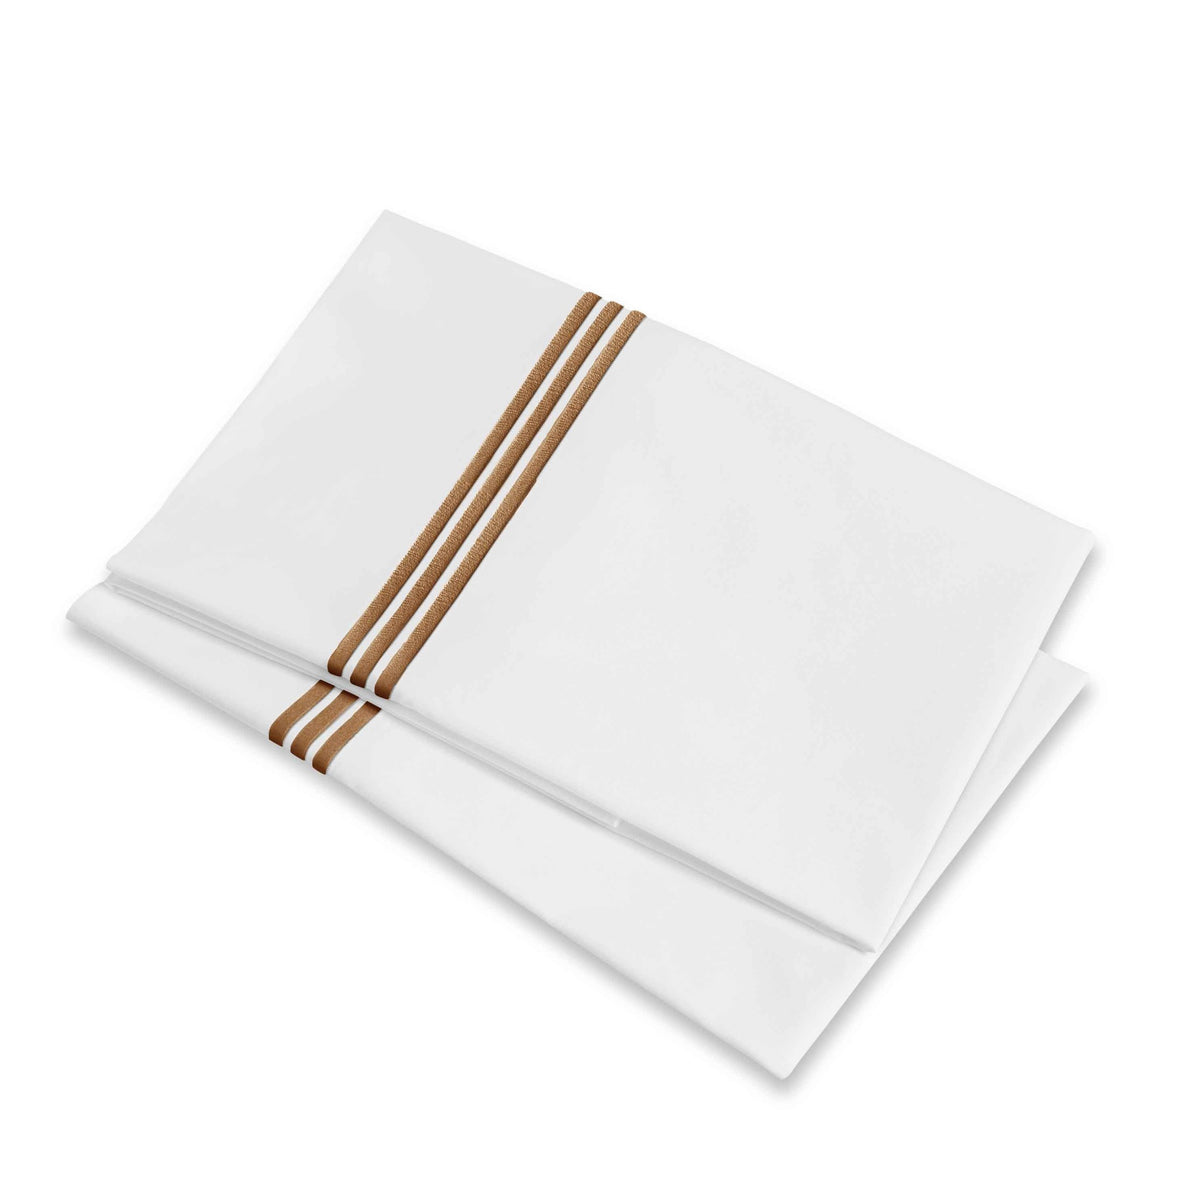 Folded Pillowcases of Signoria Platinum Percale Bedding in White/Cognac Color